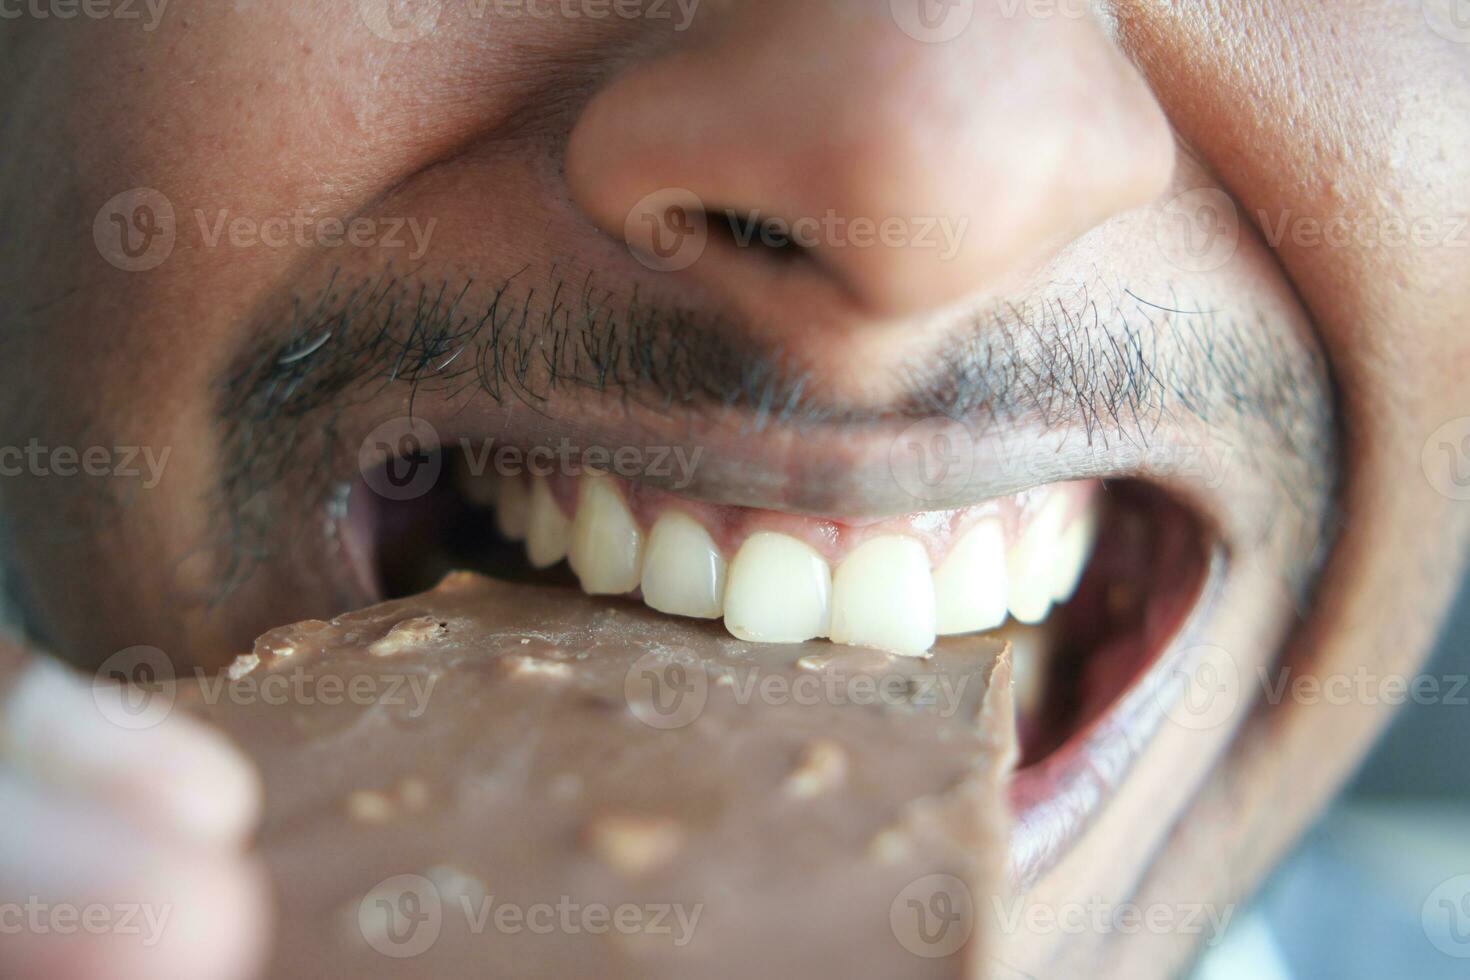 jonge man die donkere chocolade eet close-up foto